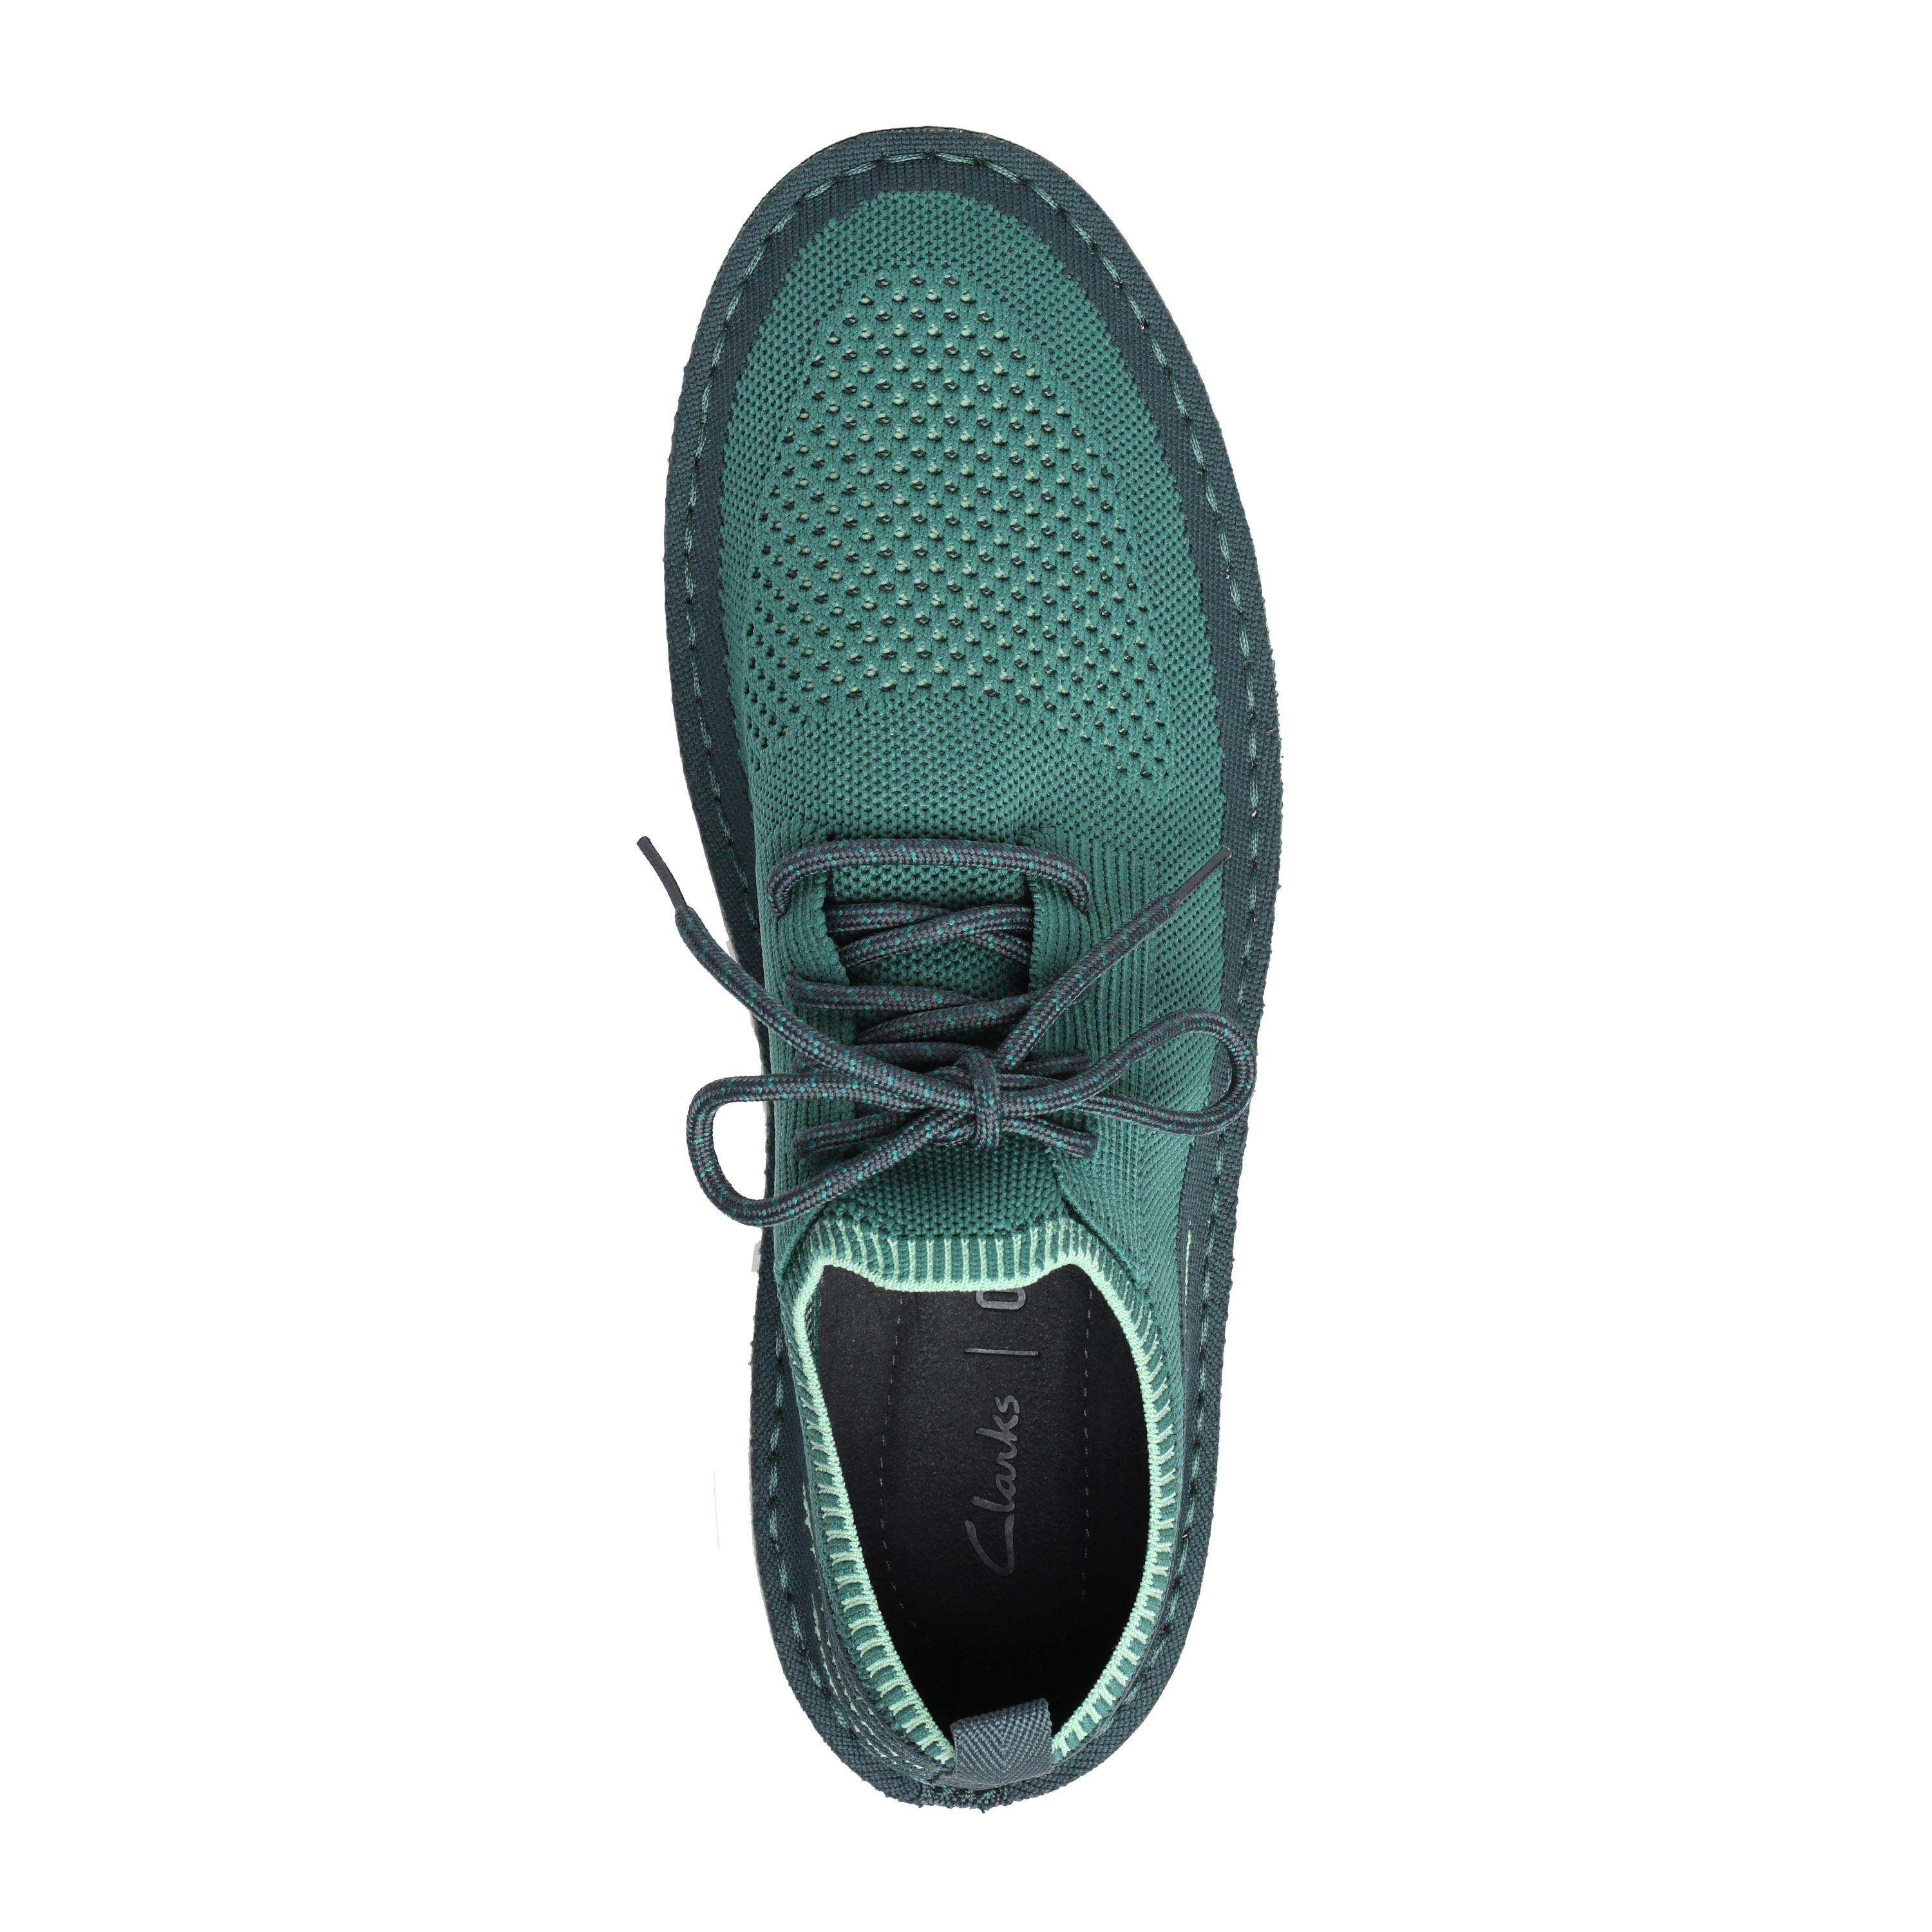 Женские кроссовки Clarks, зеленые, цвет зеленый, размер 37 - фото 3